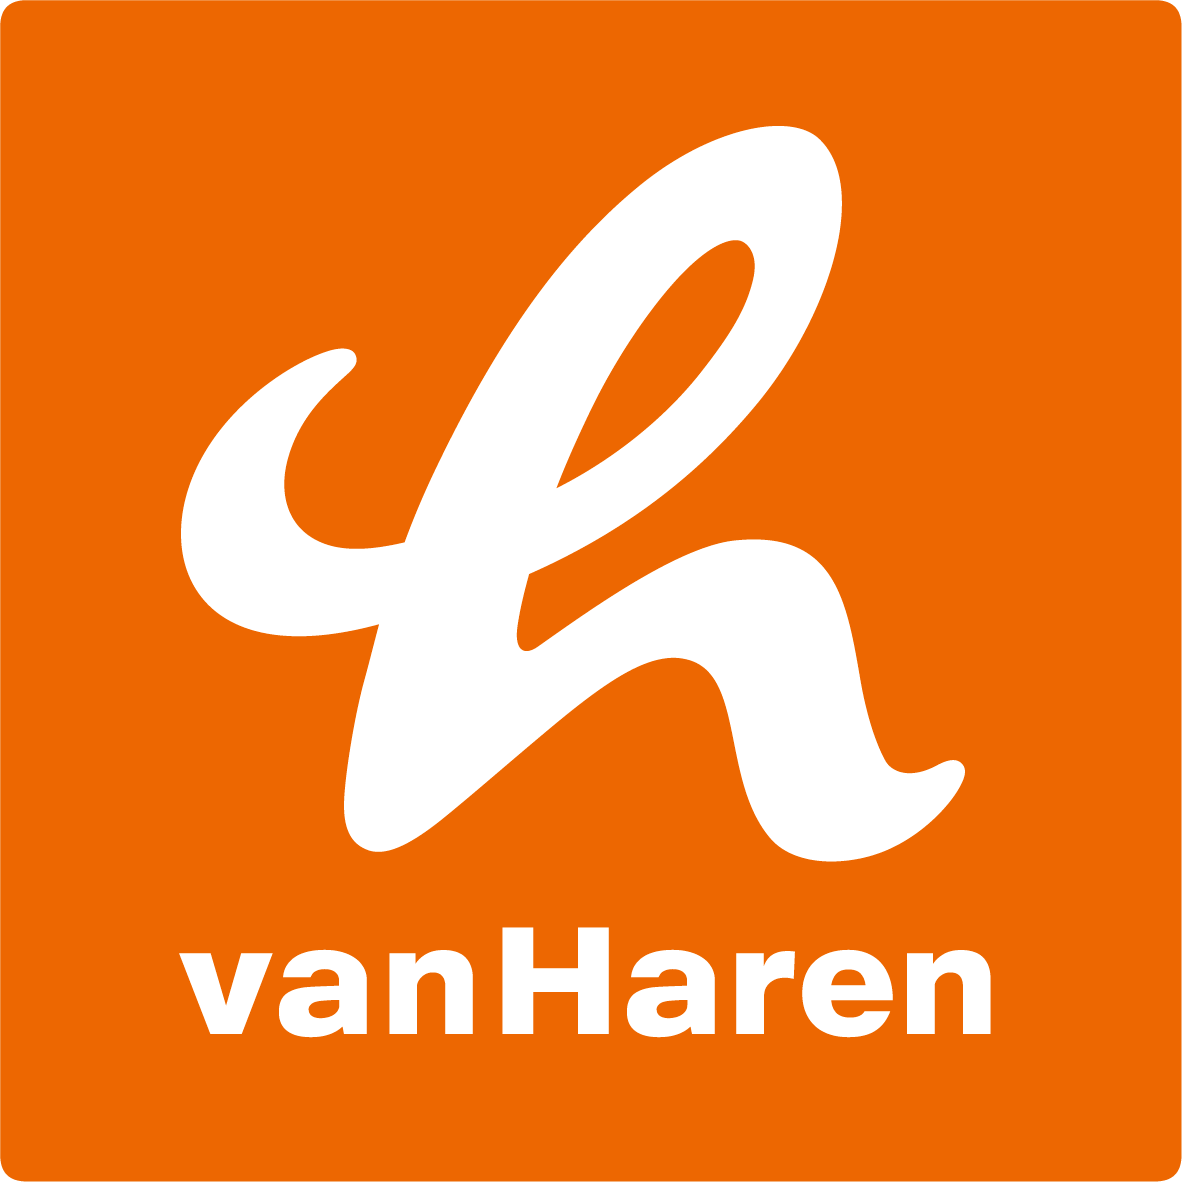 VAN HAREN - Shoe Store - Amersfoort - 033 445 0190 Netherlands | ShowMeLocal.com